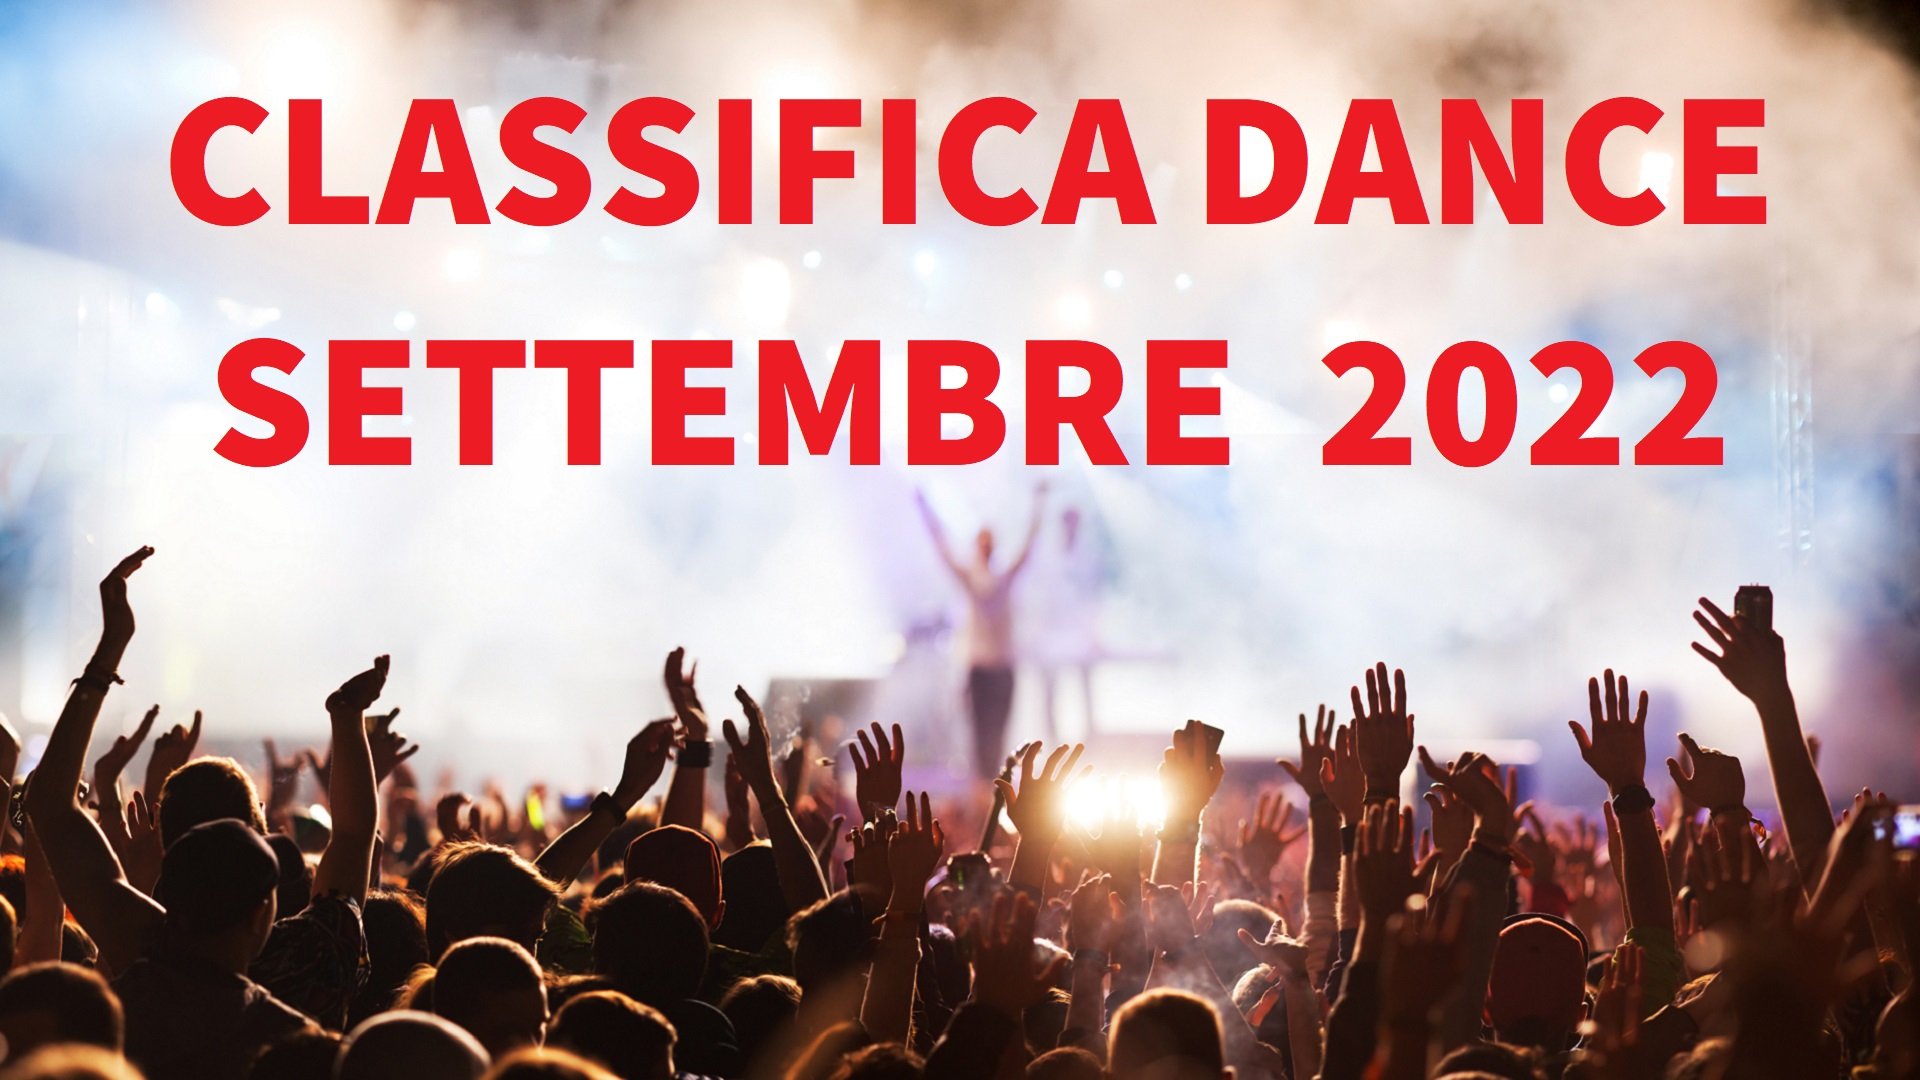 CLASSIFICA DANCE SETTEMBRE 2022 - Musica Dance del Momento SETTEMBRE 2022